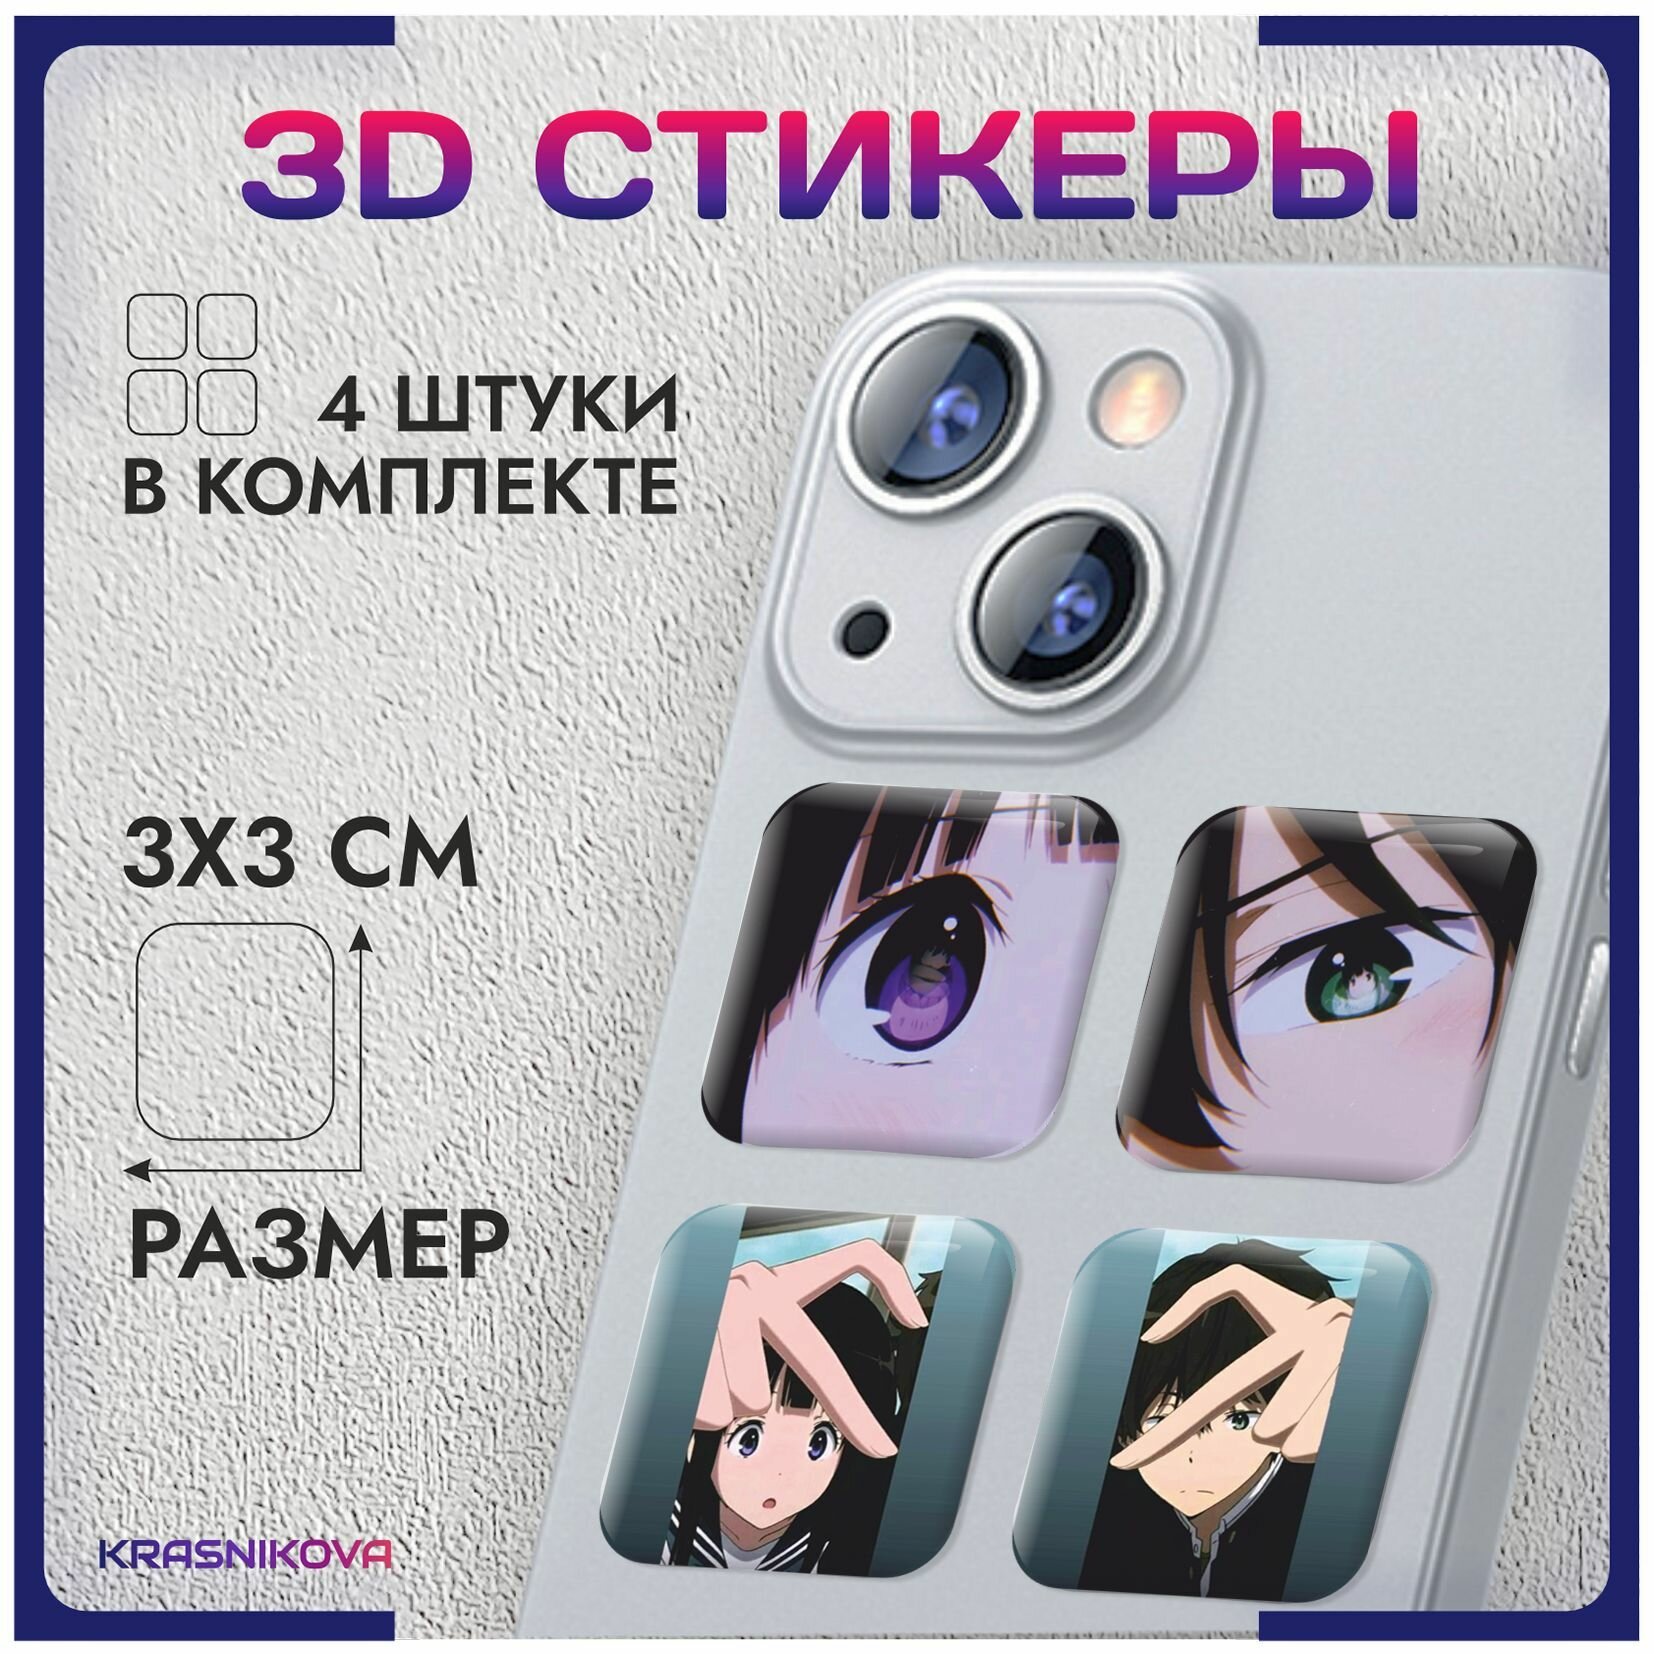 3D стикеры на телефон объемные наклейки аниме хьека арт